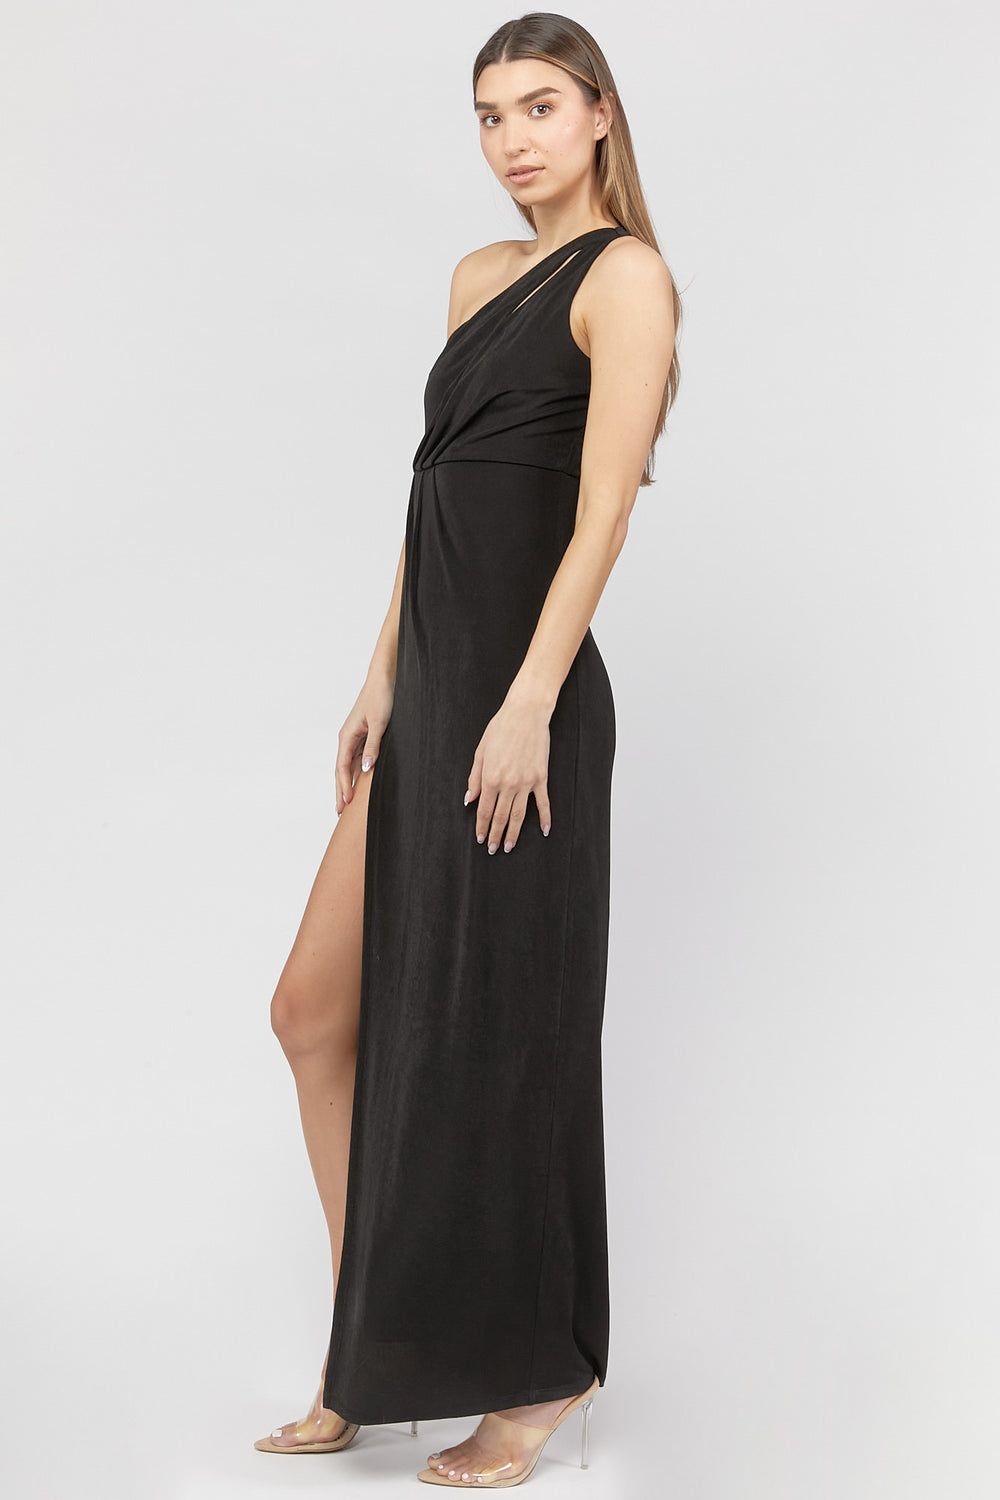 One-Shoulder Leg-Slit Maxi Dress Black